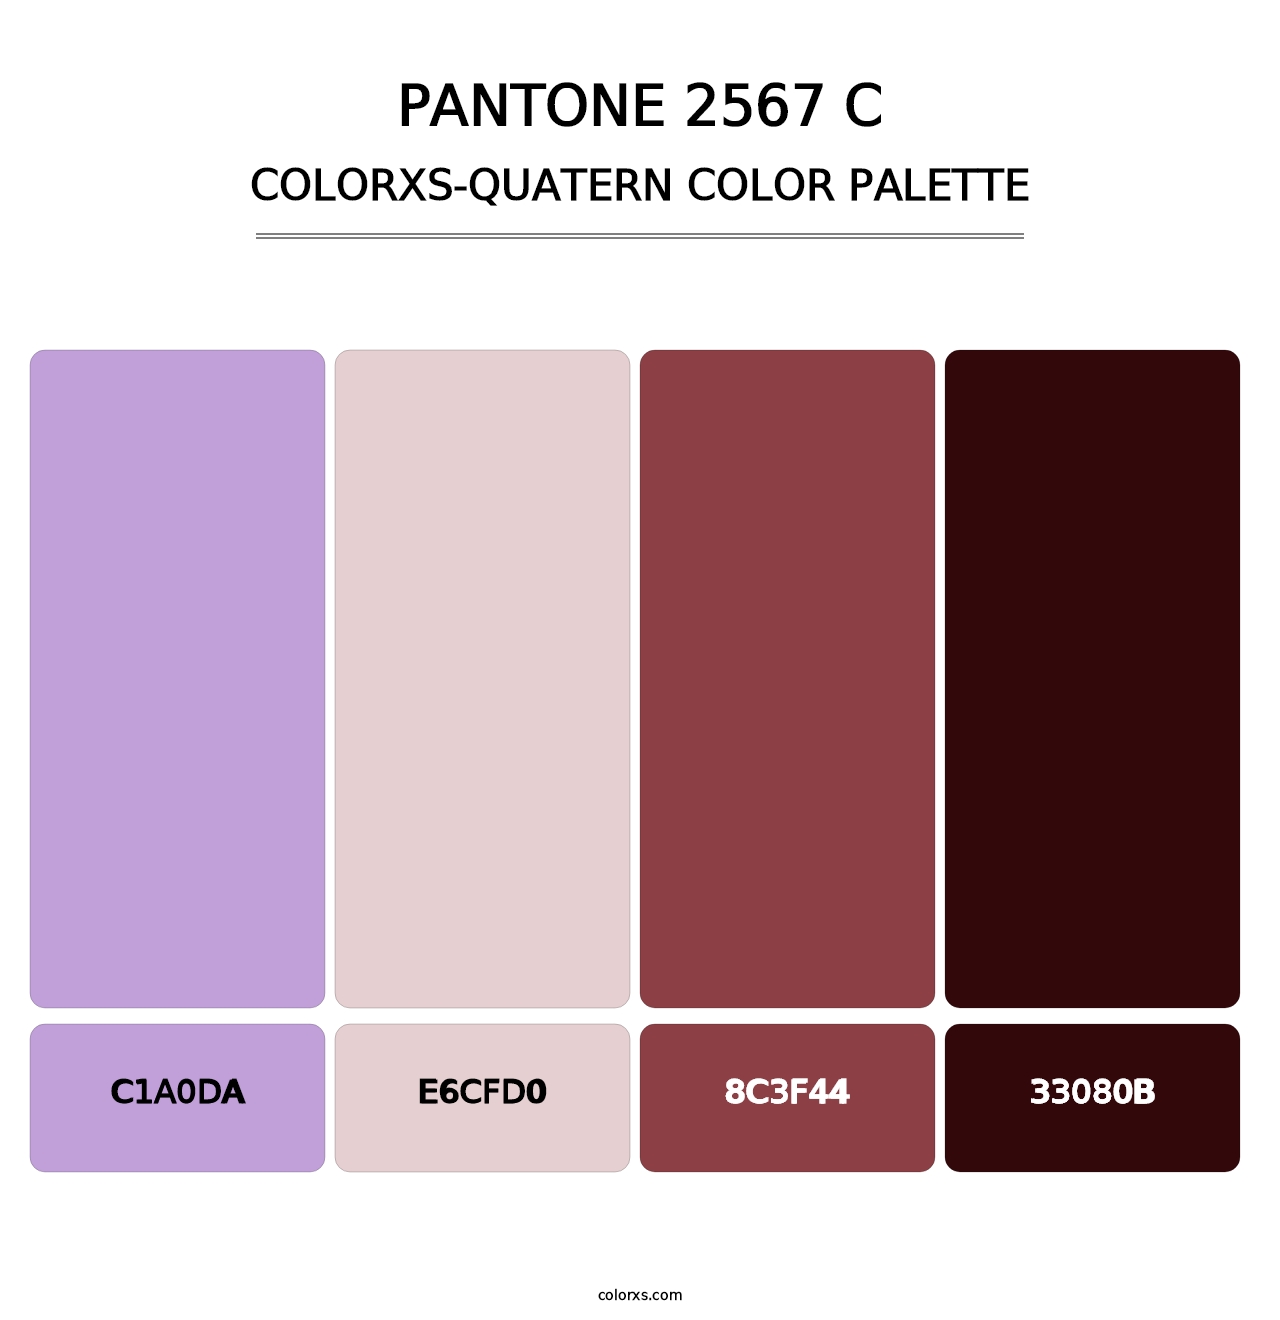 PANTONE 2567 C - Colorxs Quatern Palette